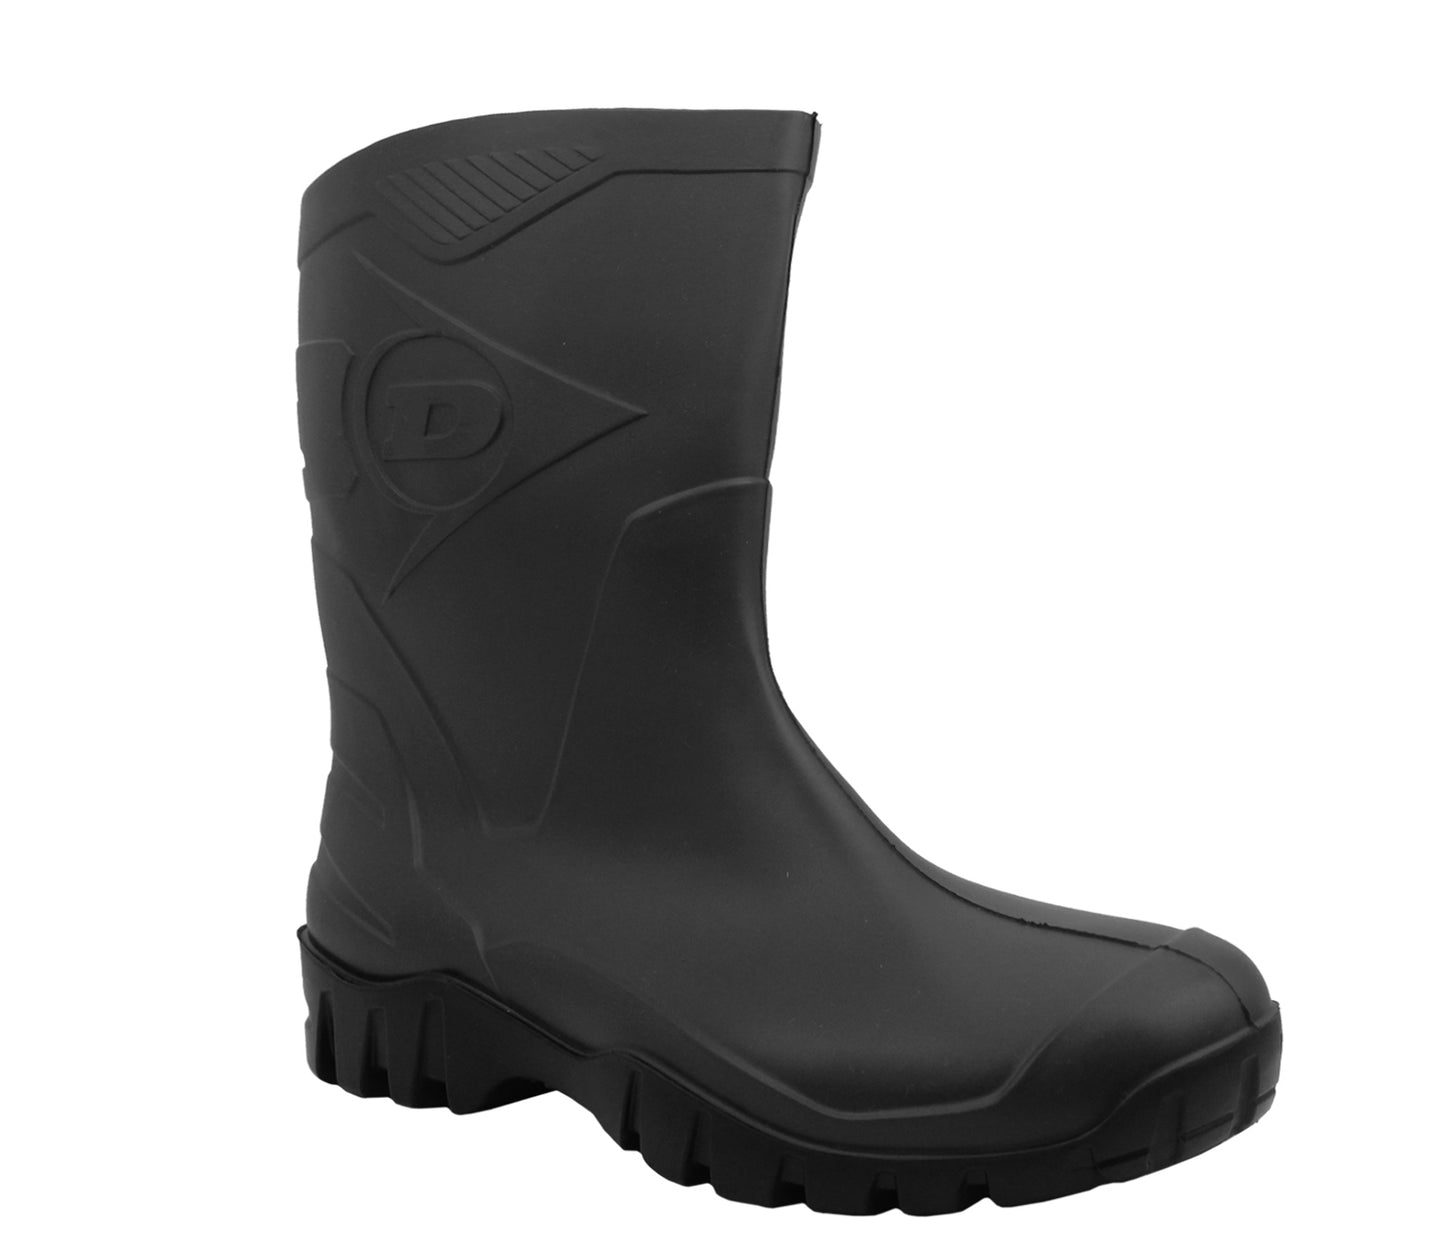 DEE Dunlop Unisex Wellington Boots in Black